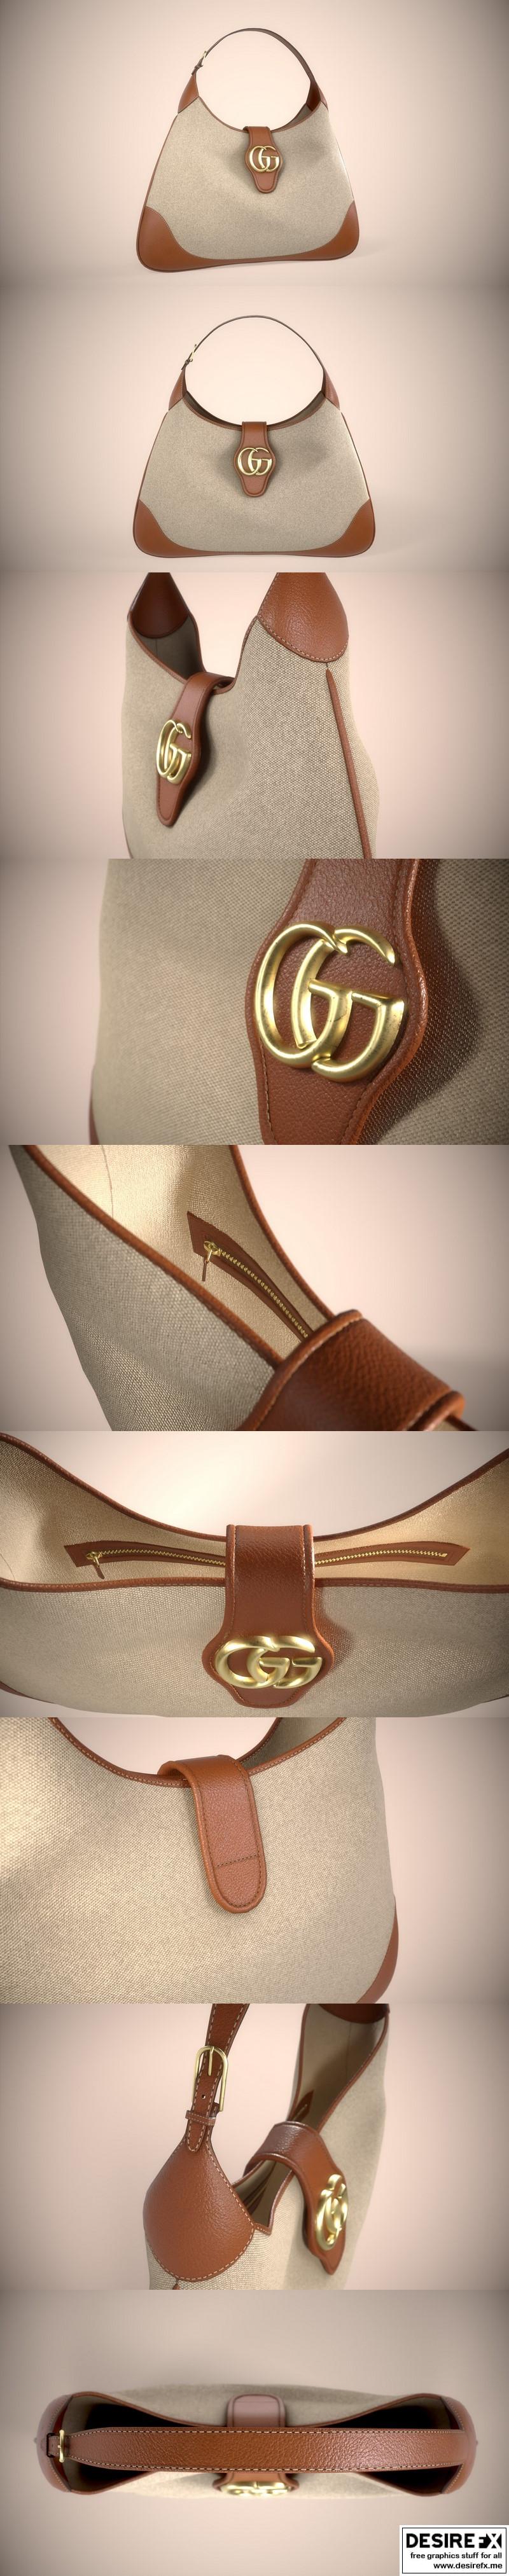 Desire FX 3d models | Gucci Aphrodite Bag